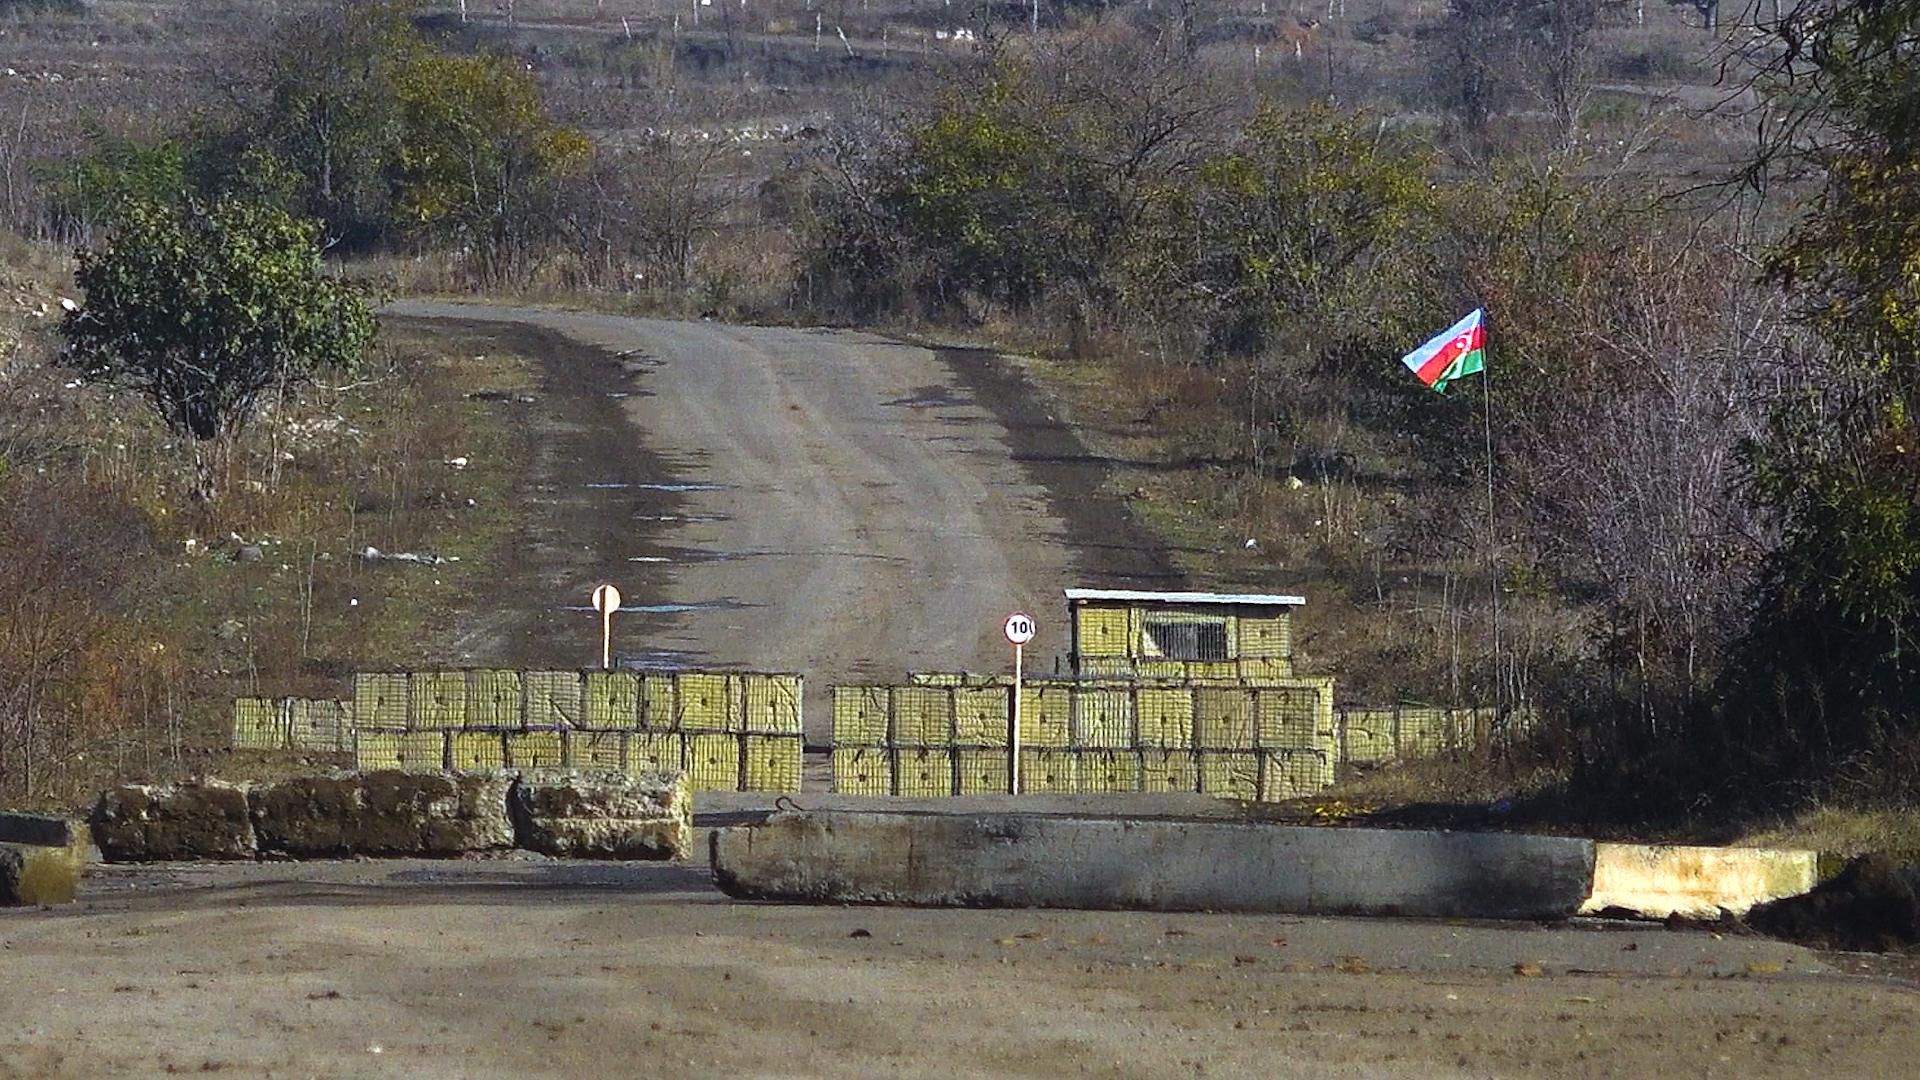 Արցախի Խրամորթ գյուղում ադրբեջանական կողմի հետ բանակցություններ են տարվում